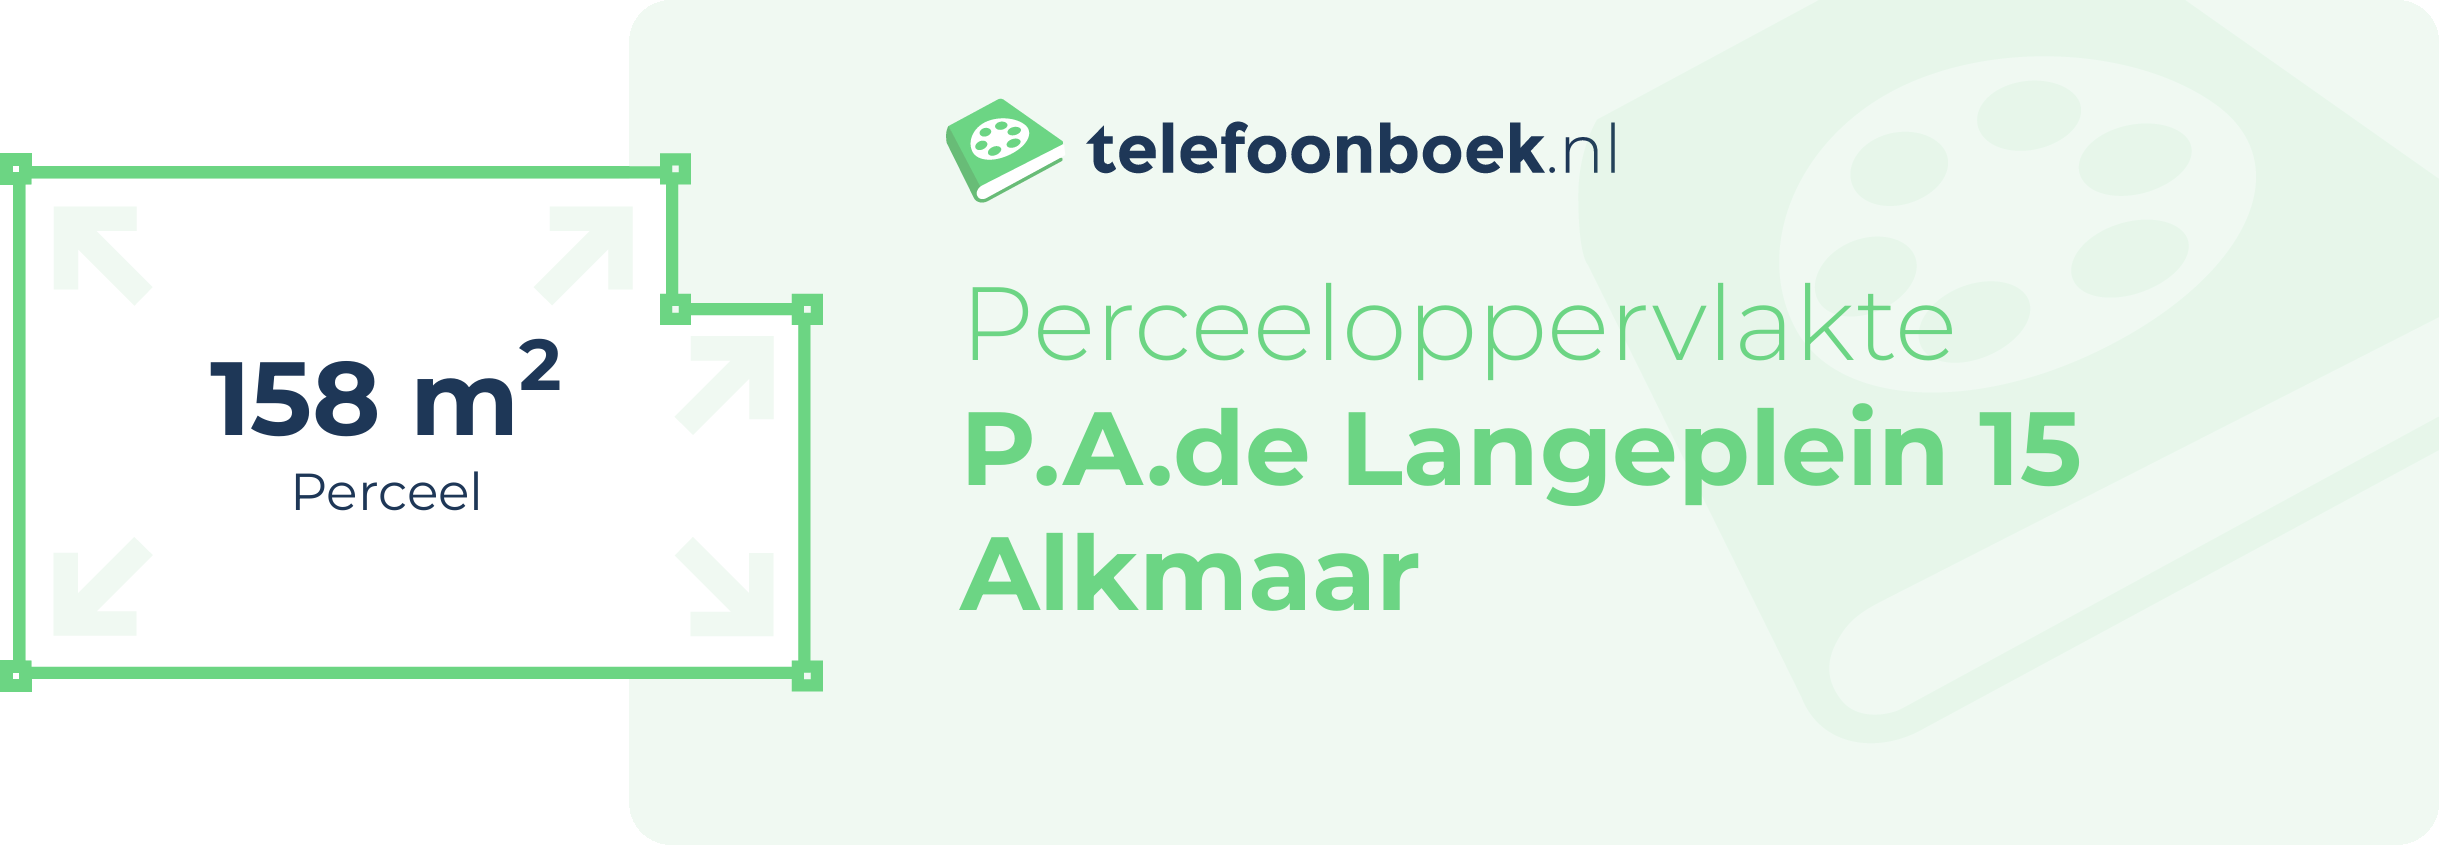 Perceeloppervlakte P.A.de Langeplein 15 Alkmaar